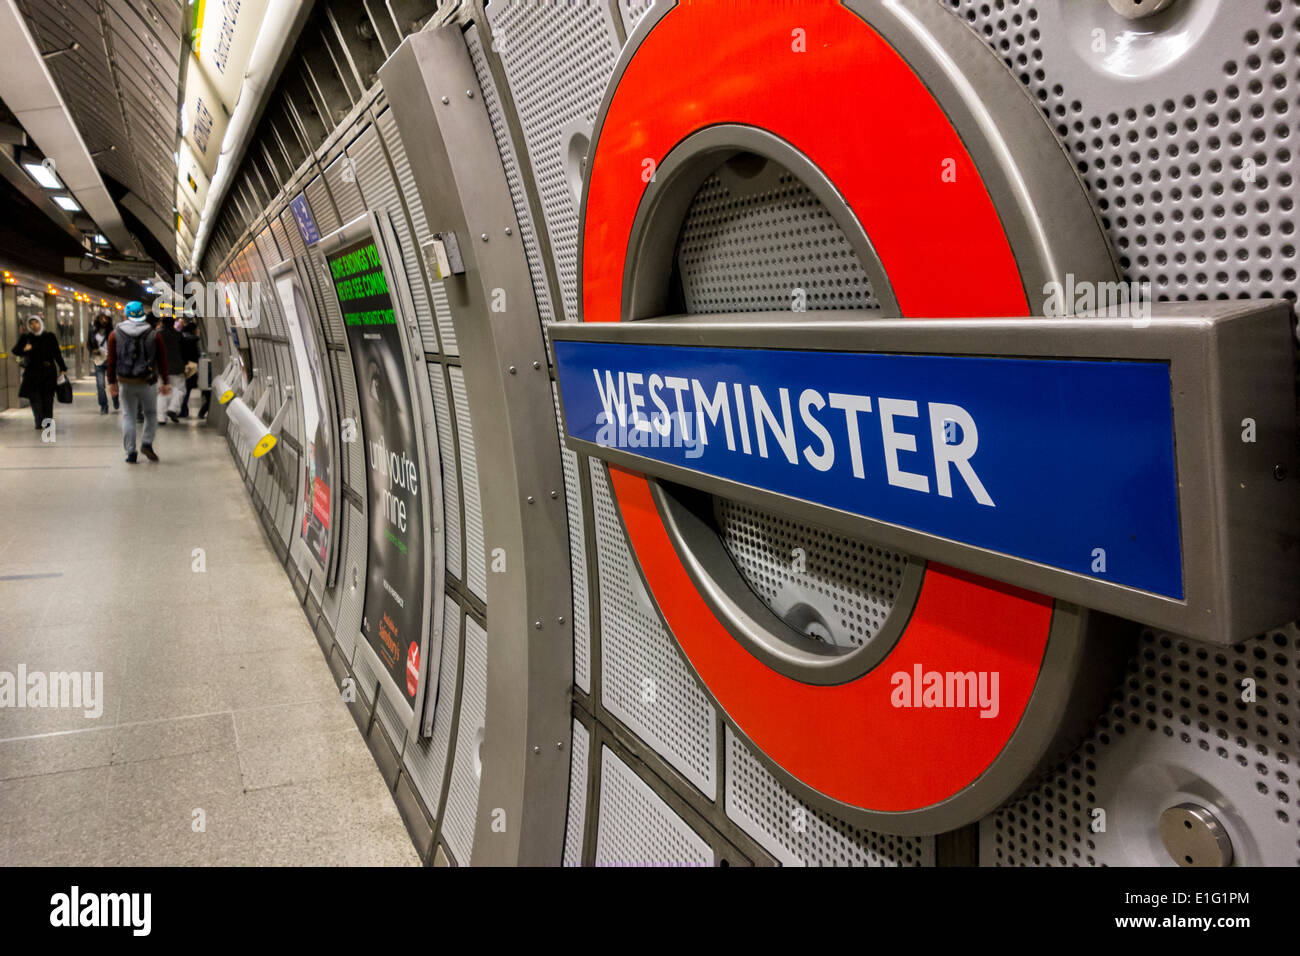 Westminster Underground Station sign, London, UK Stock Photo